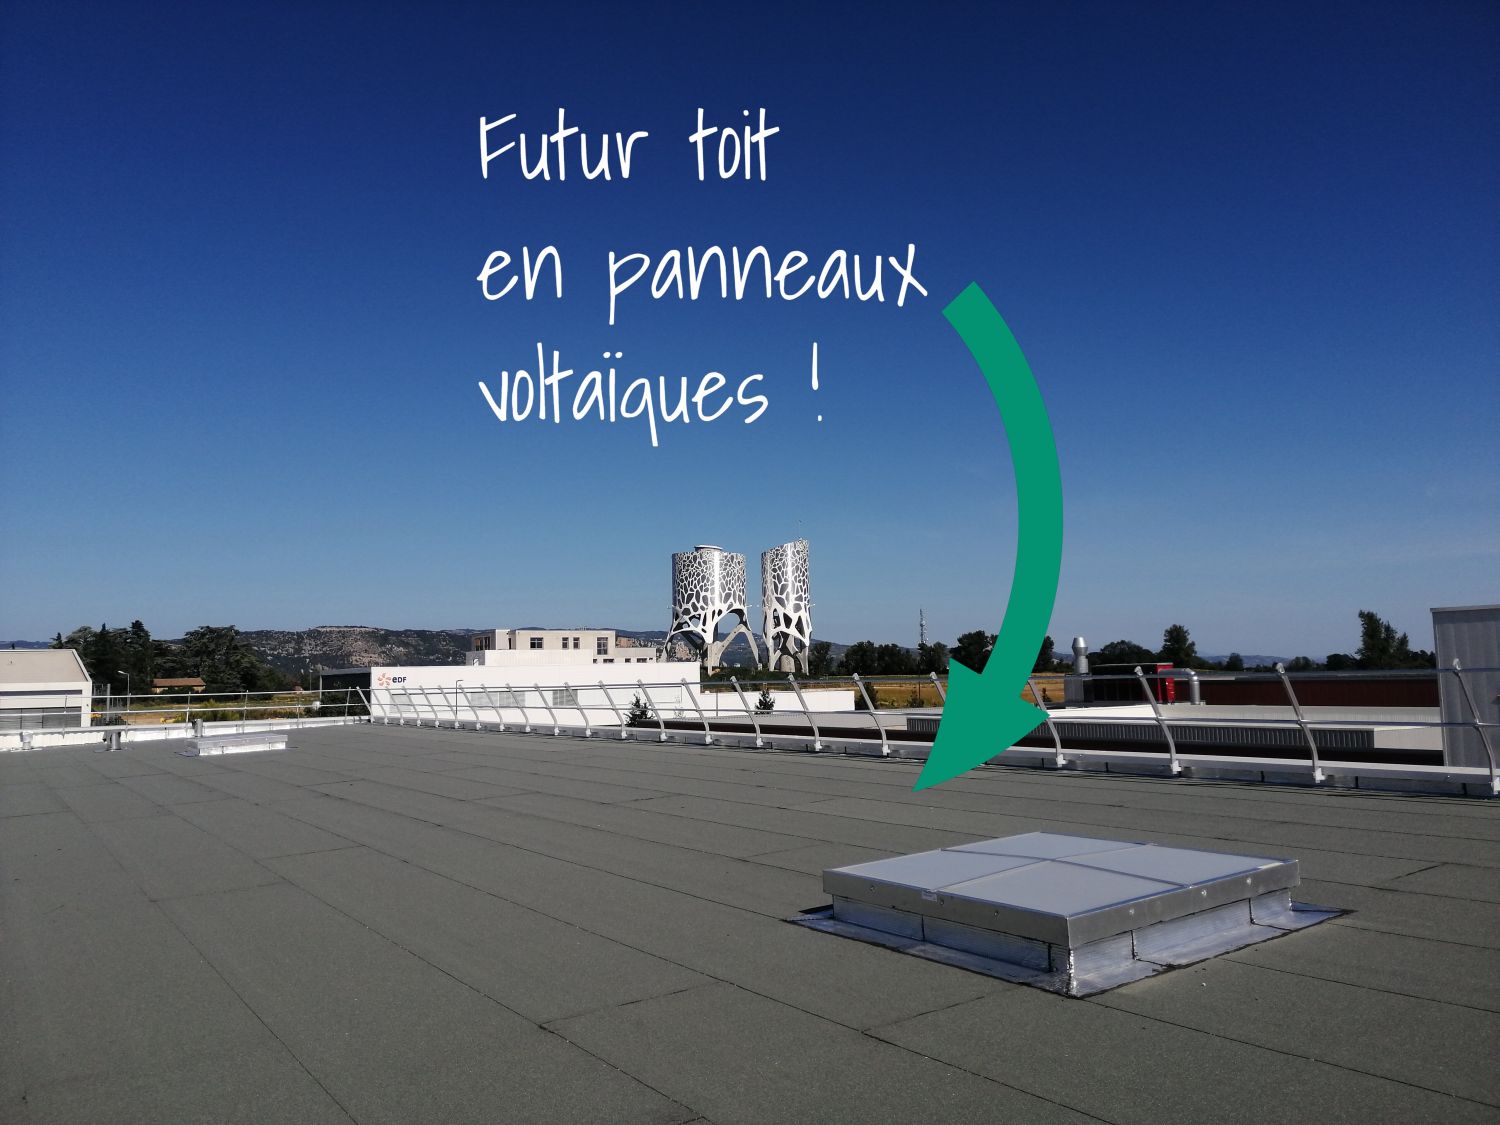 Futur toit en panneaux voltaiques